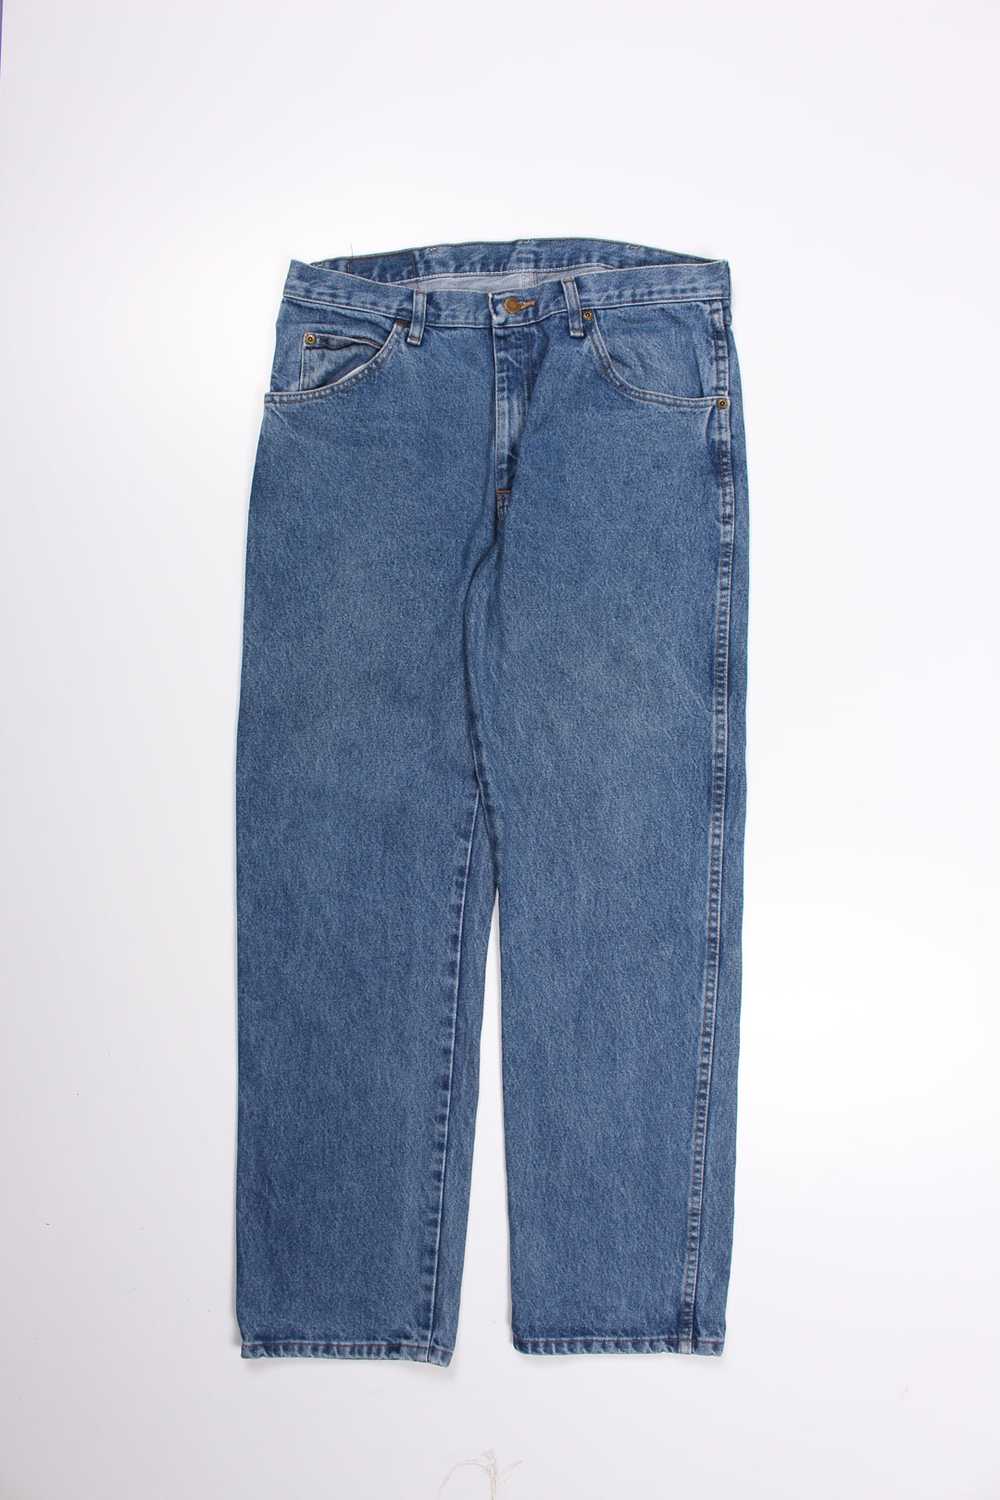 Men's Vintage Wrangler Denim Jeans W34 x L31 - image 2